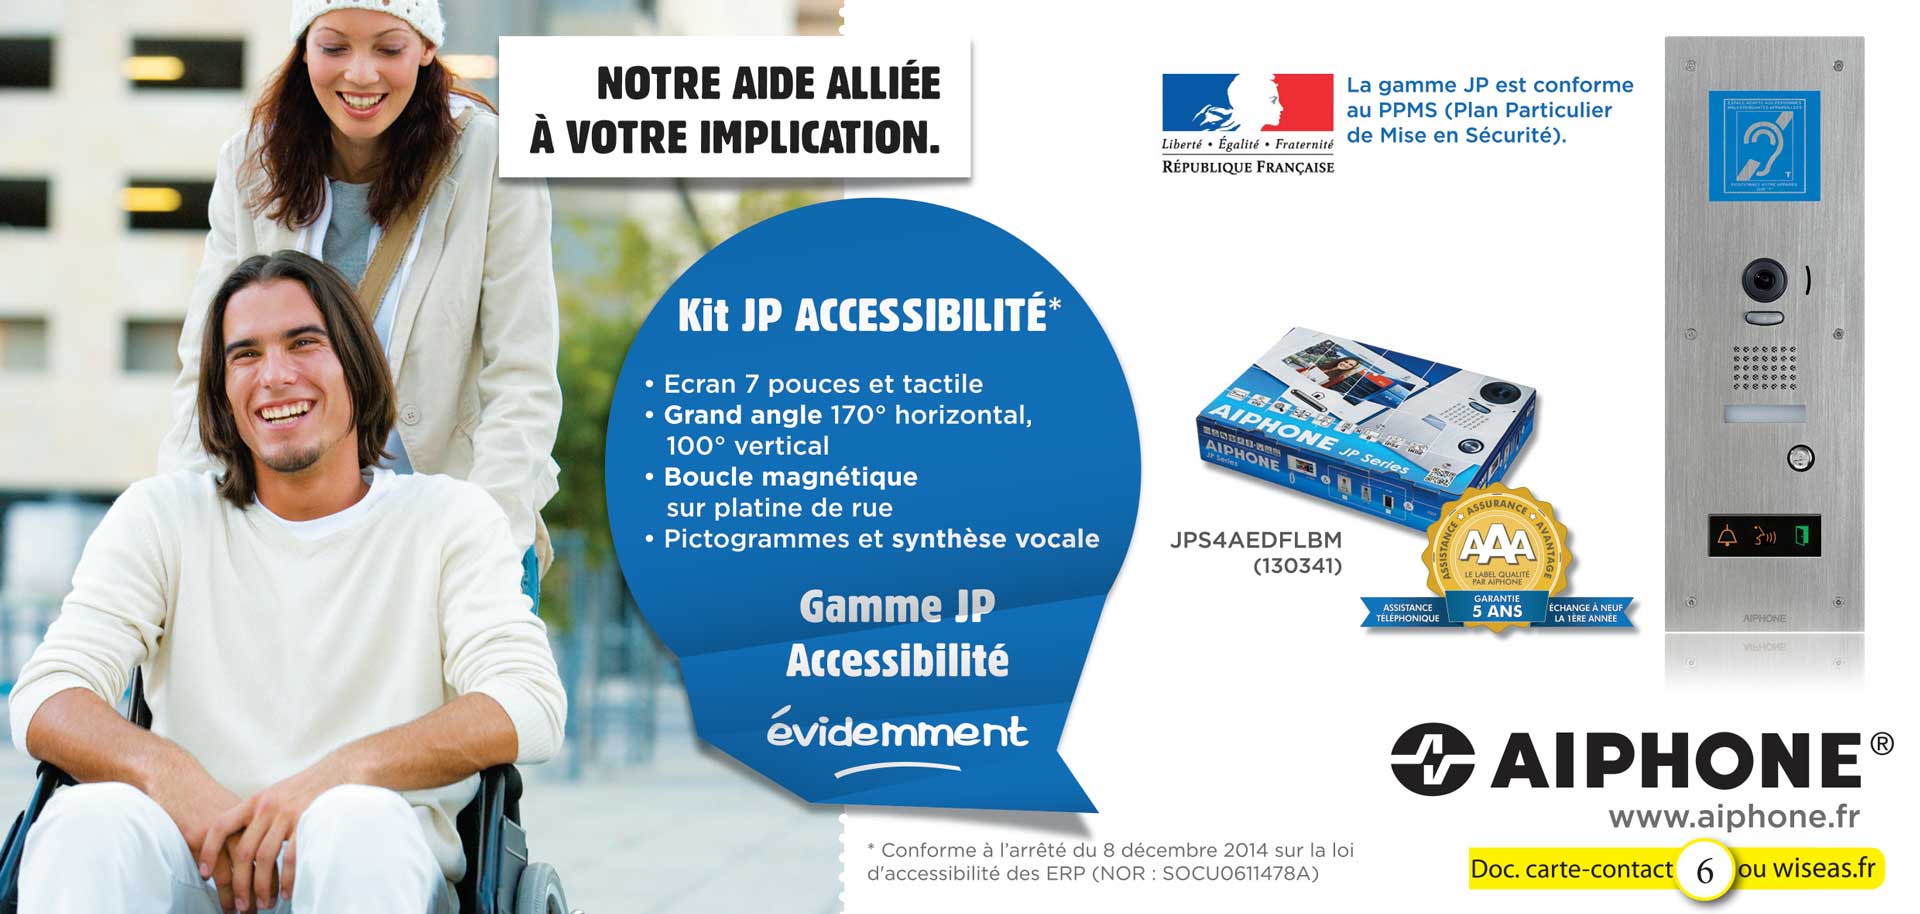 Kit JP Accessibilité ERP et Administrations